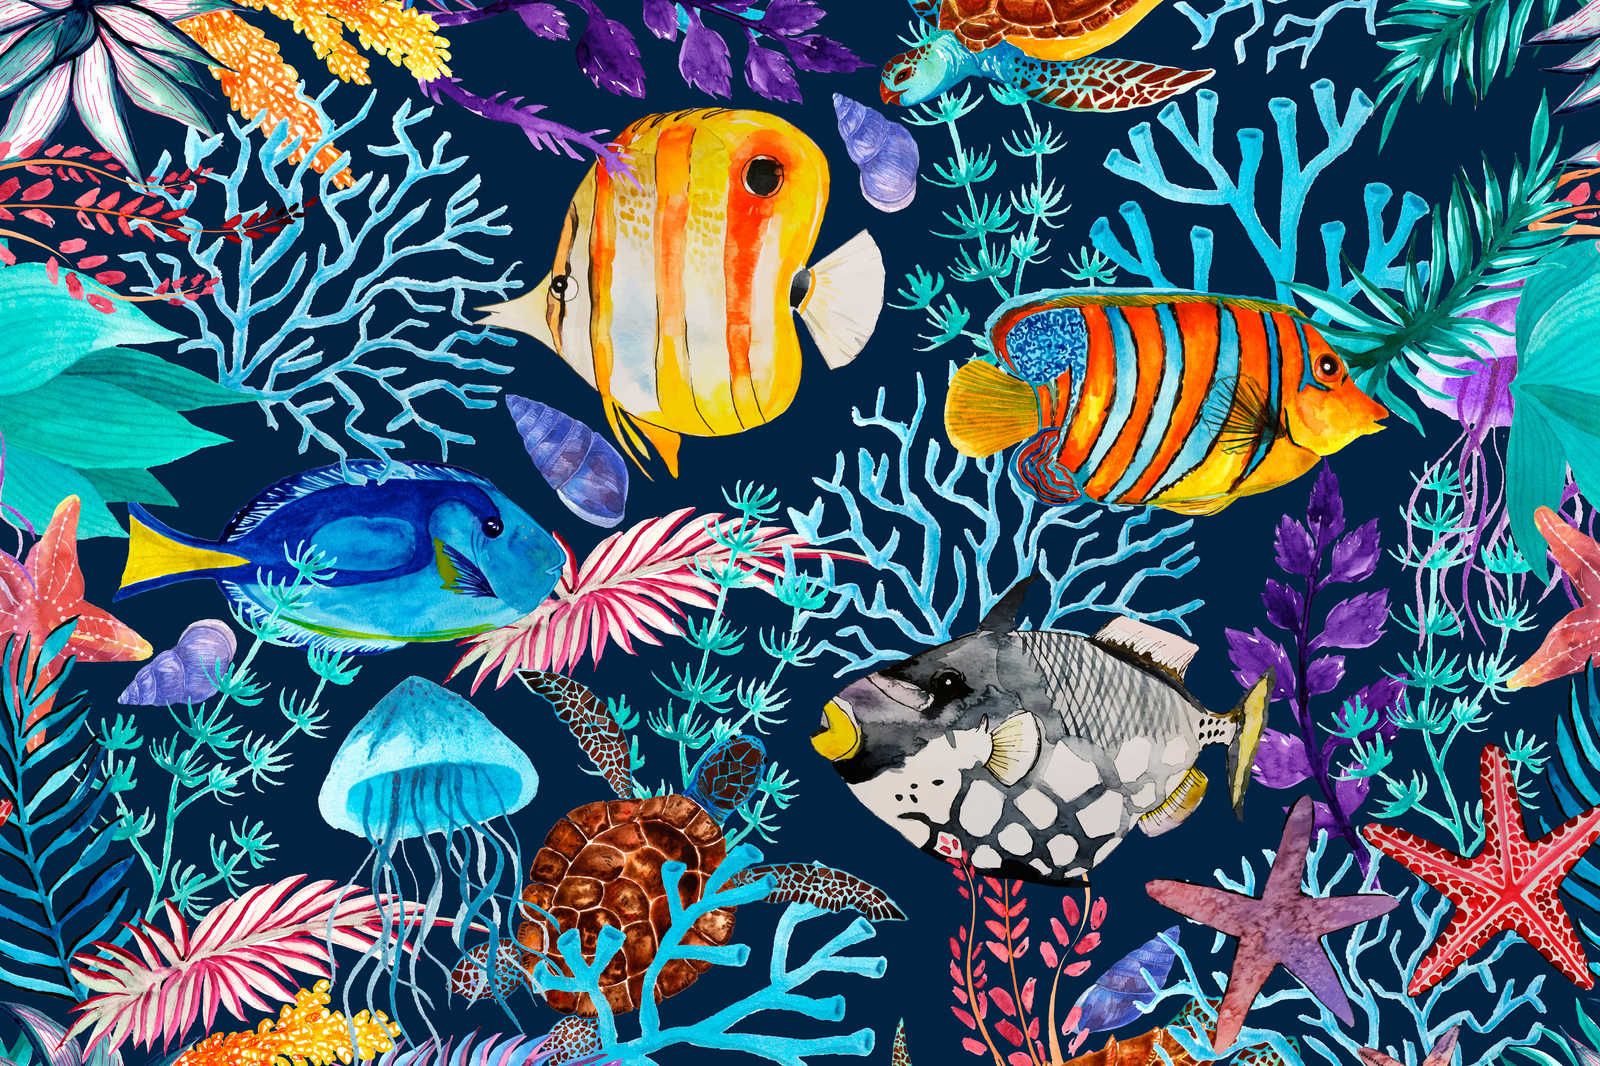             Onderwater Canvas Schilderij met kleurrijke vissen en zeesterren - 0,90 m x 0,60 m
        